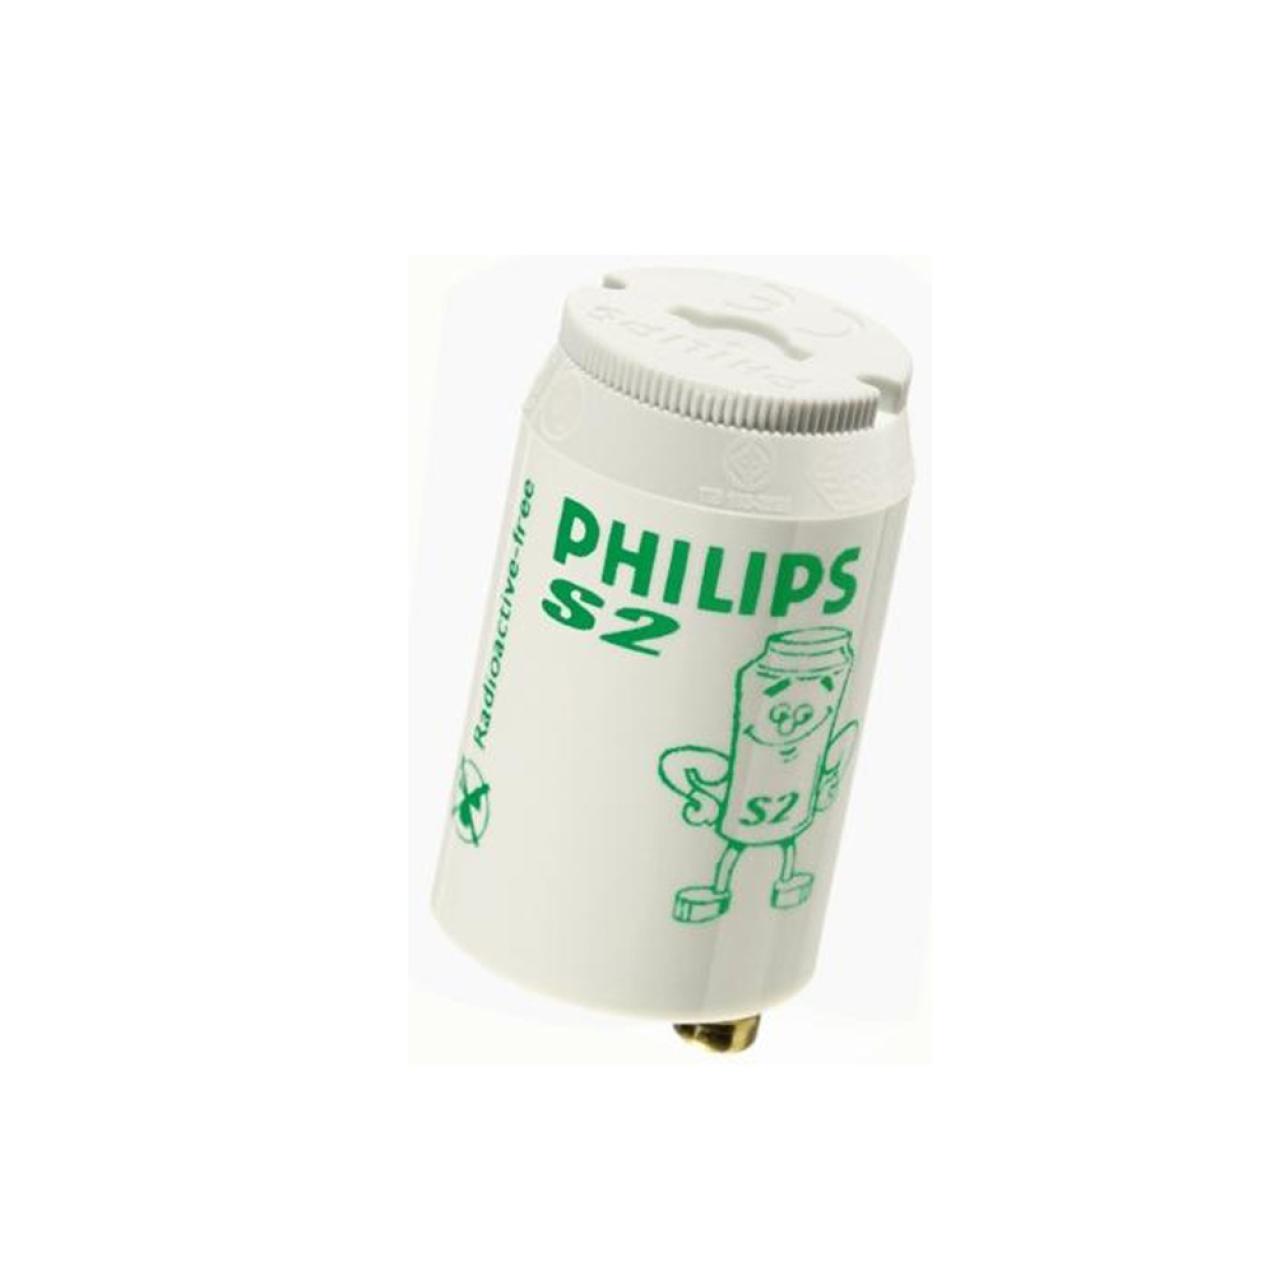 PHILIPS Starter Ecoclick S2 für Leuchtstoffröhren, 4 - 22 W, 2 Stück